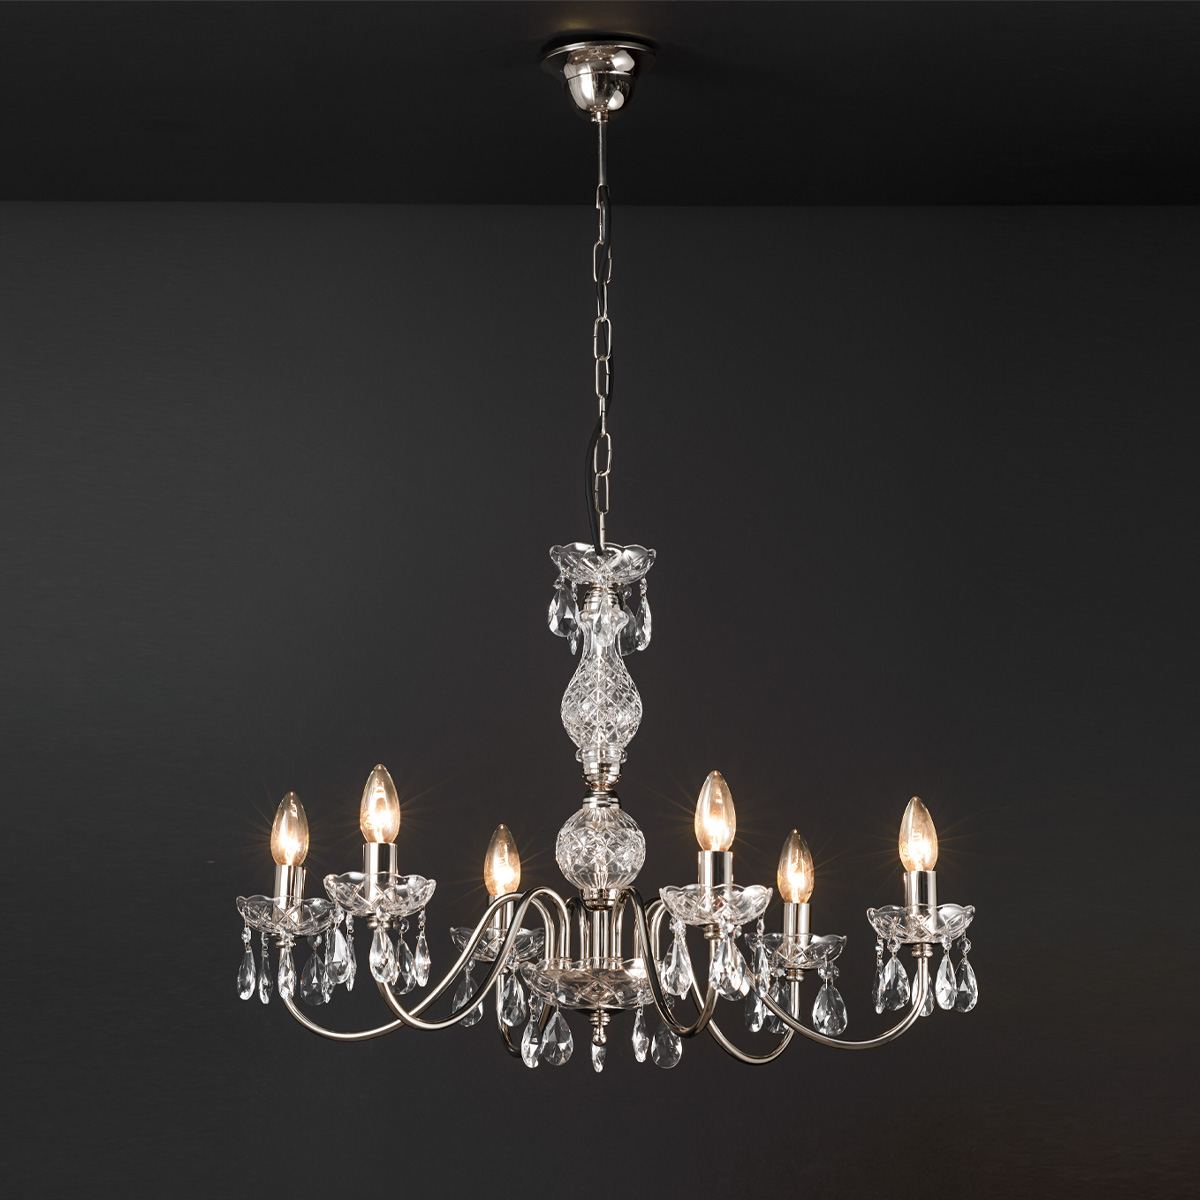 Φωτιστικό πολύφωτο με κρύσταλλα ΒΕΡΓΙΝΑ chandelier with crystals